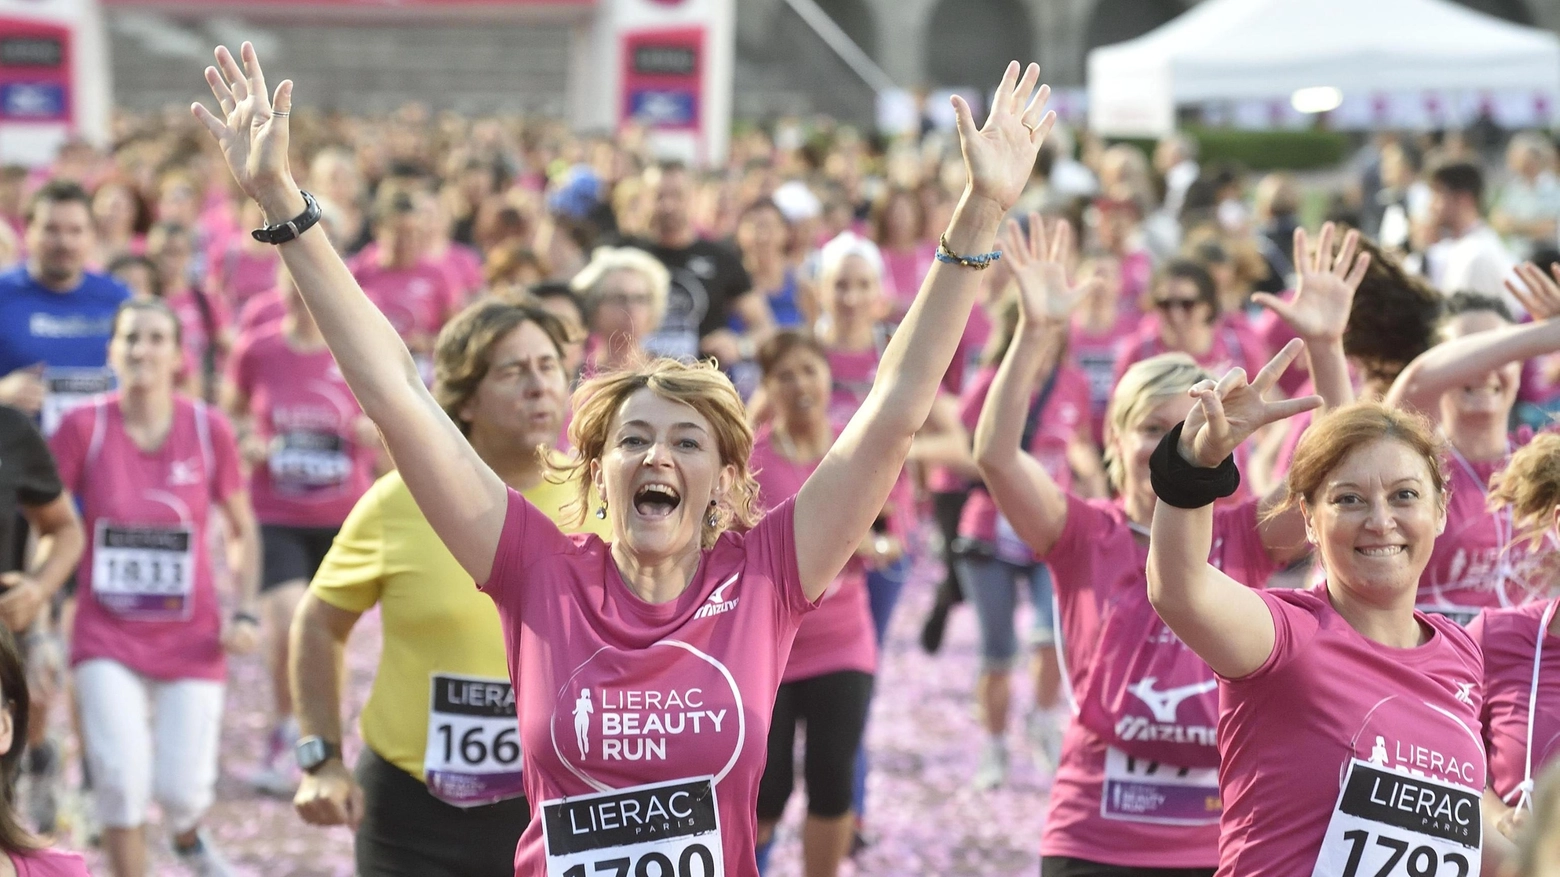 Partecipanti alla Lierac Beauty Run, la corsa dedicata alle donne (Ansa)